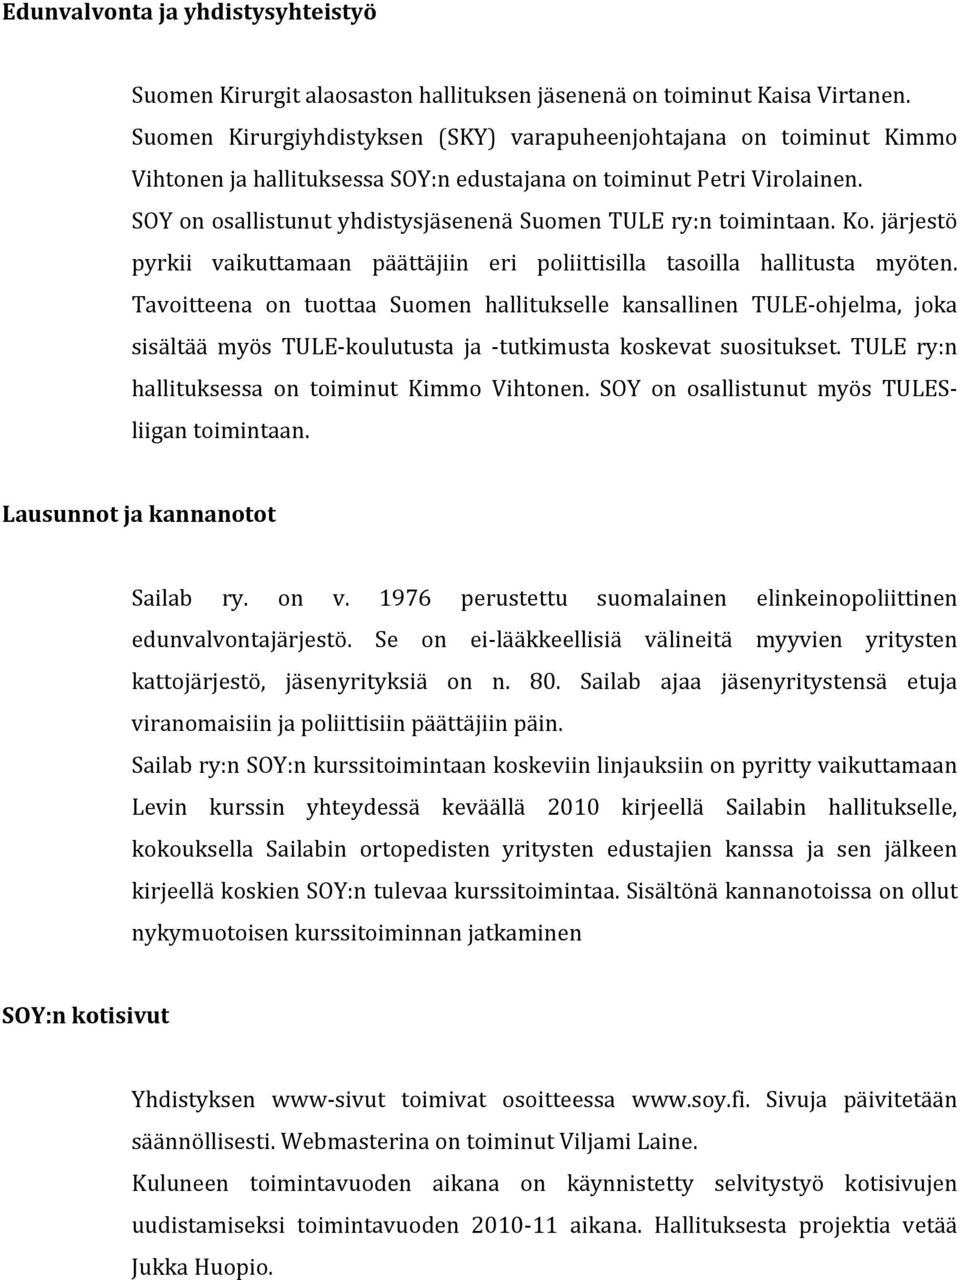 Tavitteena n tuttaa Sumen hallitukselle kansallinen TULE- hjelma, jka sisältää myös TULE- kulutusta ja - tutkimusta kskevat susitukset. TULE ry:n hallituksessa n timinut Kimm Vihtnen.